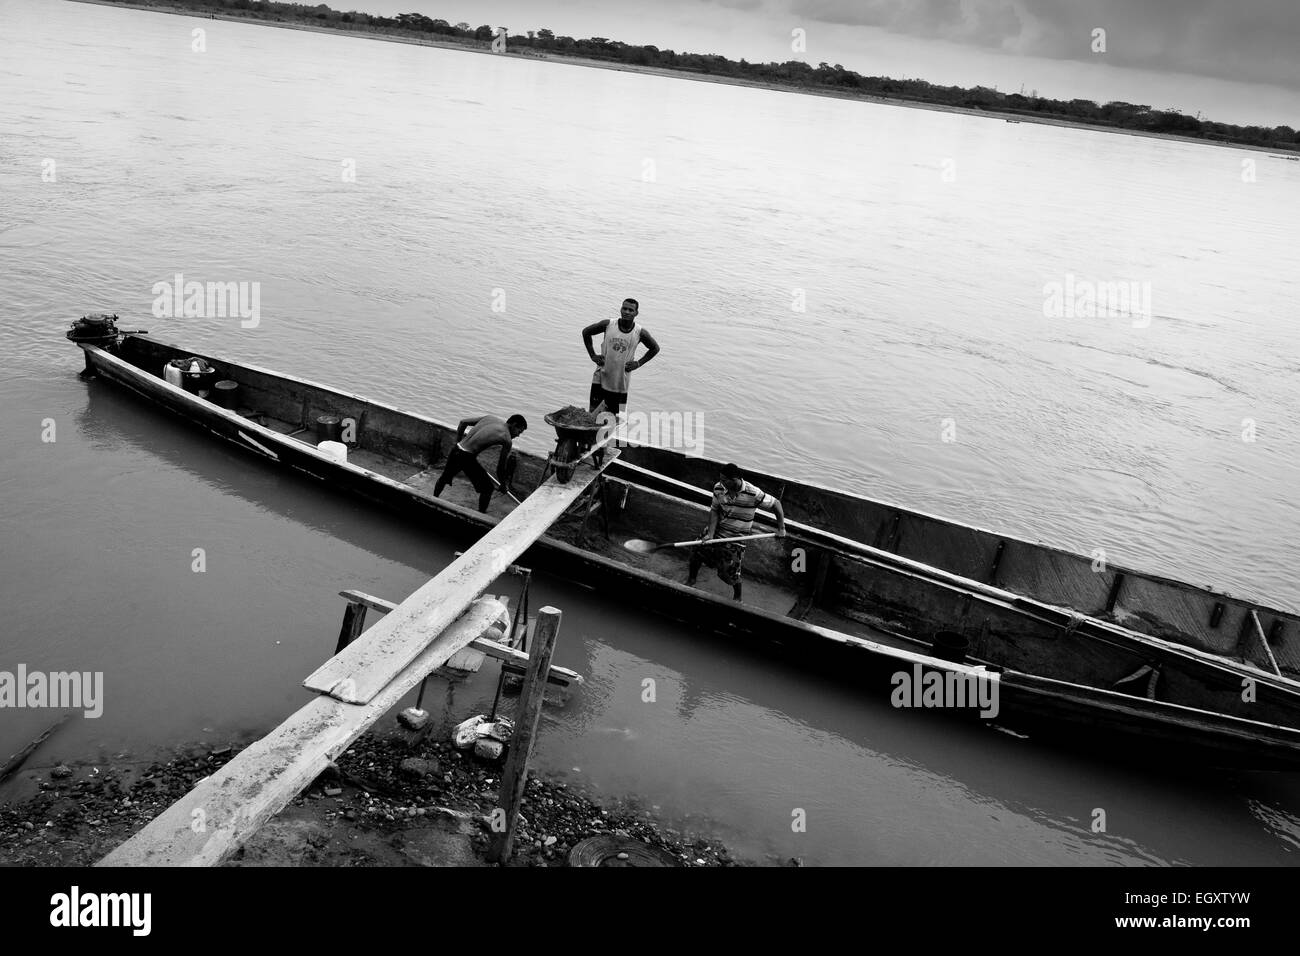 Les mineurs, à l'aide de sable colombien une brouette, décharger le sable du bateau sur la rive de la rivière à Puerto Berrío, Colombie. Banque D'Images